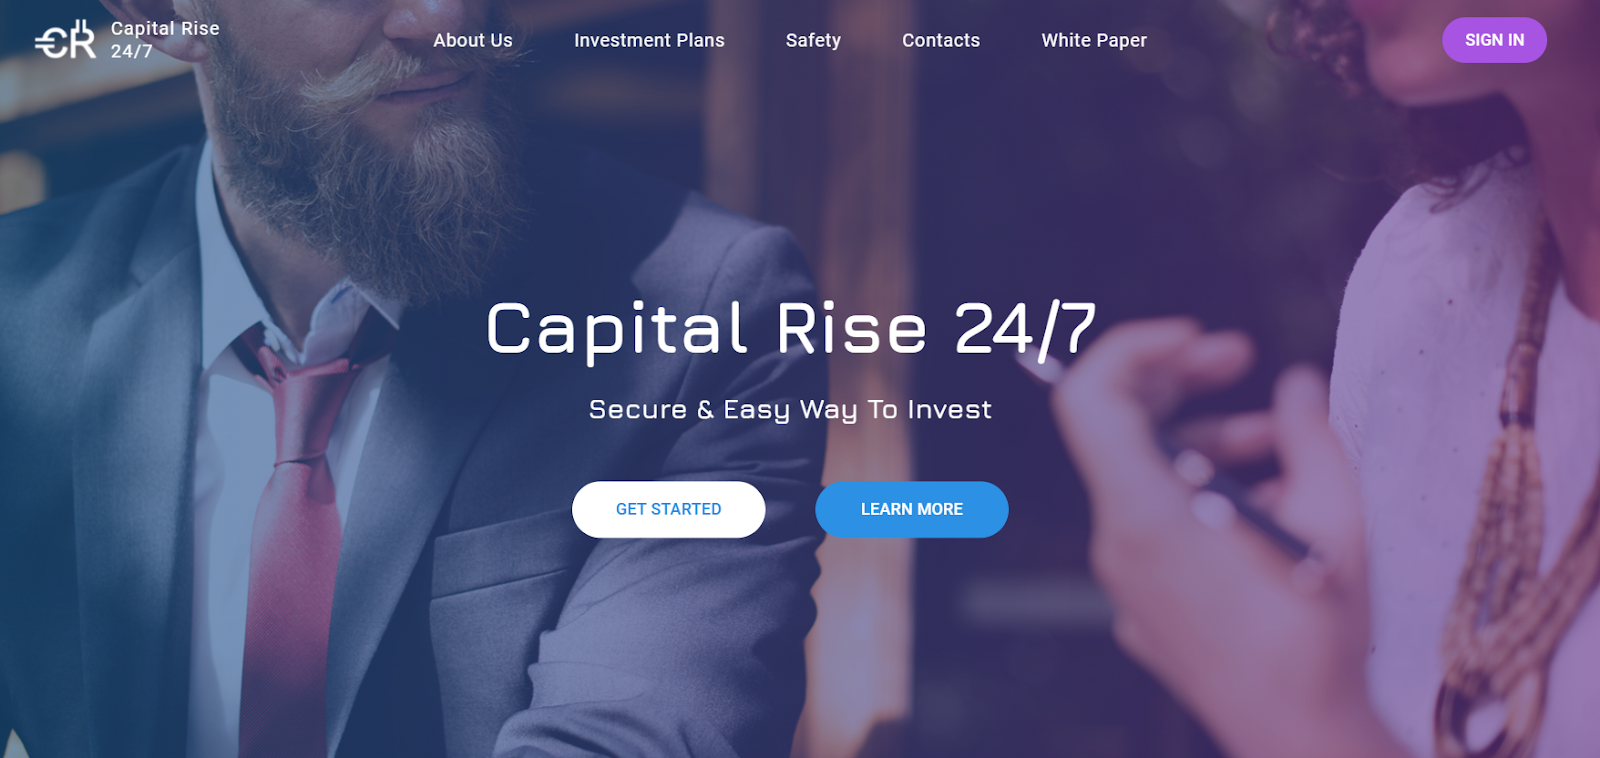 Отзывы о Capital Rise 24/7: надежный проект или обман? реальные отзывы